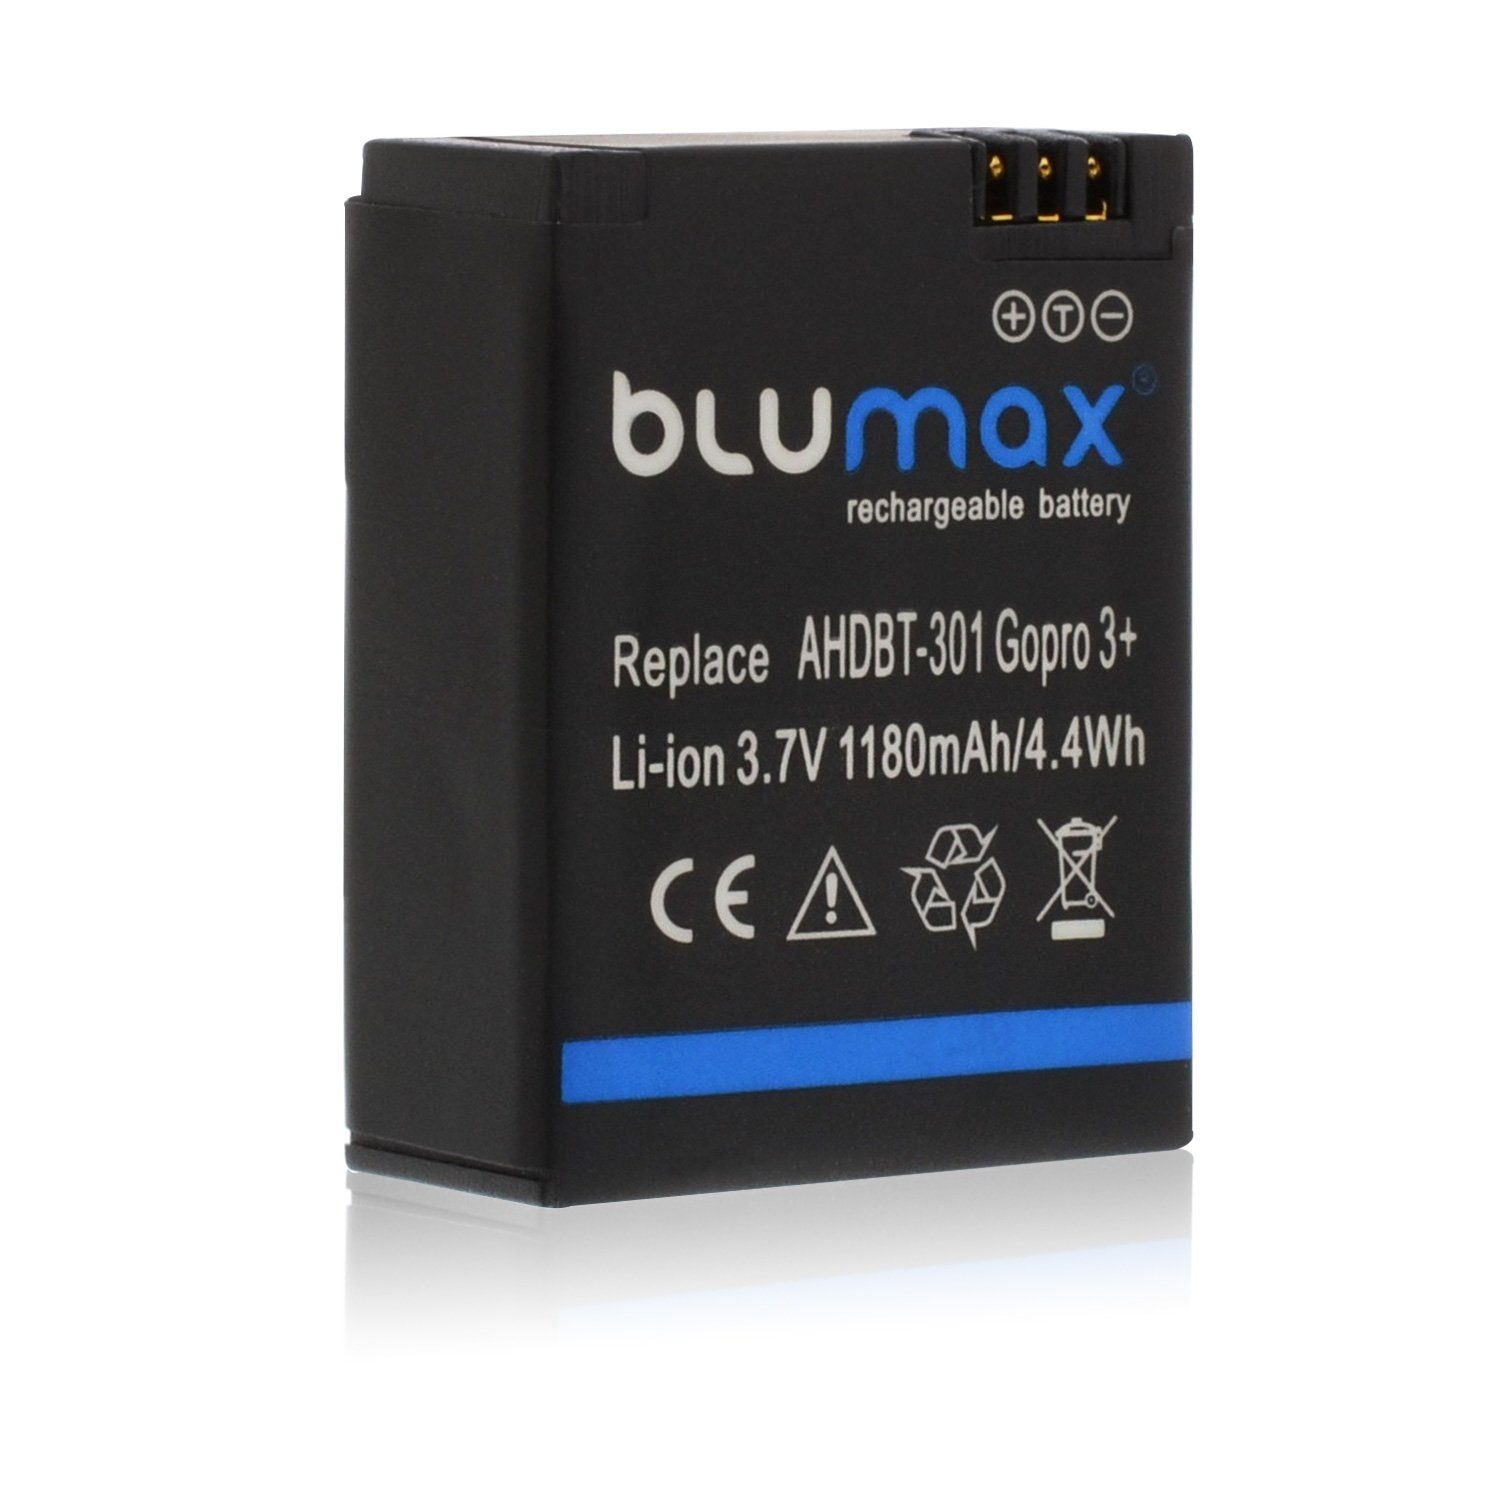 Blumax Akku passend für AHDBT-301 Gopro 3+ 1180 mAh Kamera-Akku